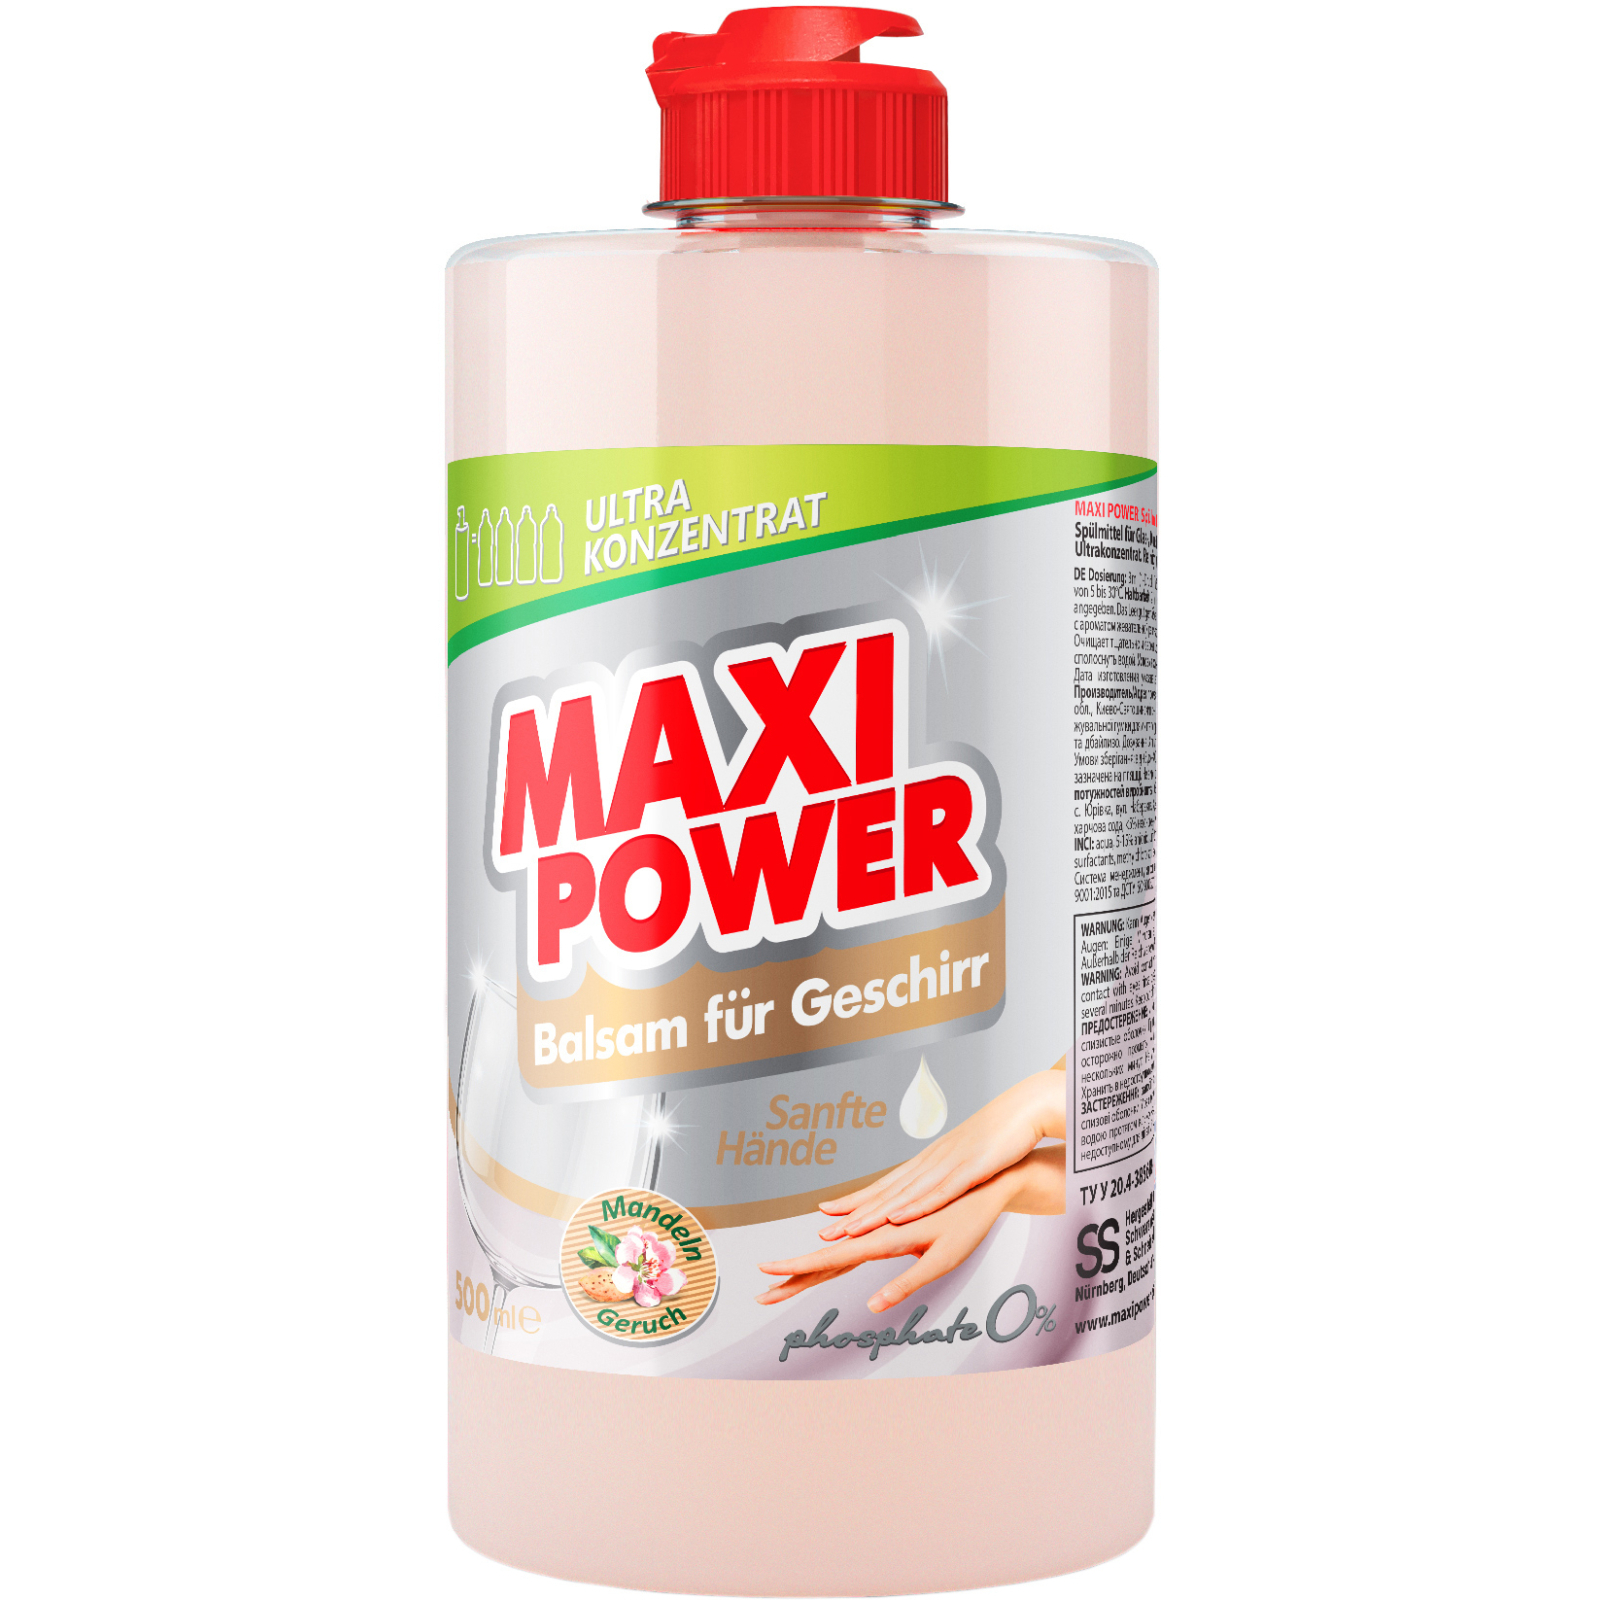 Засіб для ручного миття посуду Maxi Power Мигдаль запаска 1000 мл (4823098412151)